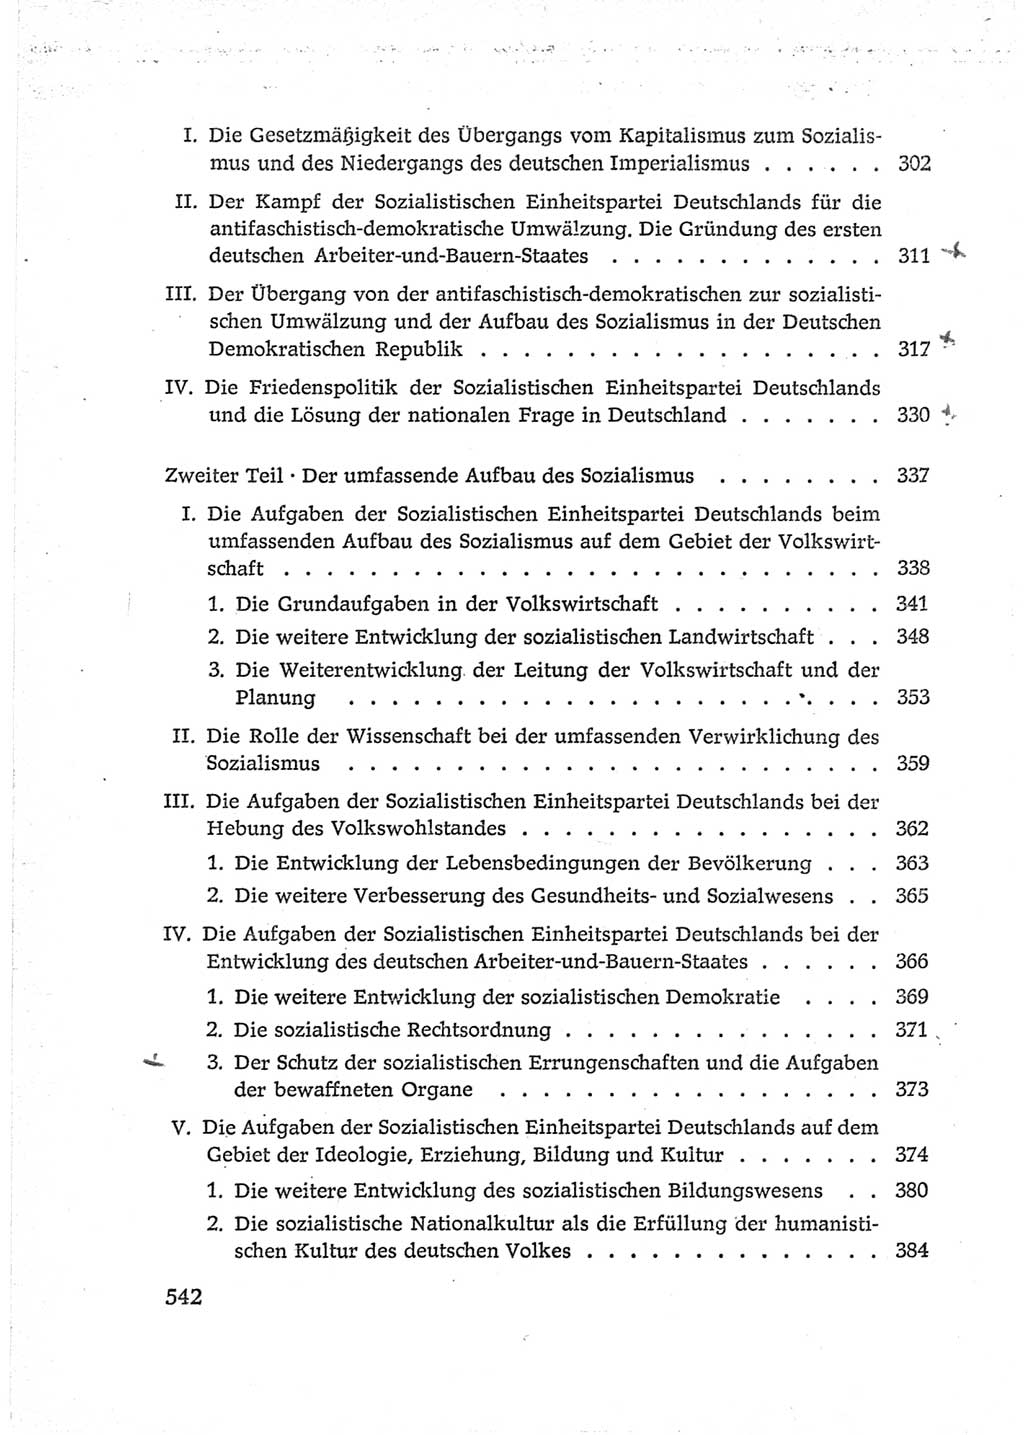 Protokoll der Verhandlungen des Ⅵ. Parteitages der Sozialistischen Einheitspartei Deutschlands (SED) [Deutsche Demokratische Republik (DDR)] 1963, Band Ⅳ, Seite 542 (Prot. Verh. Ⅵ. PT SED DDR 1963, Bd. Ⅳ, S. 542)